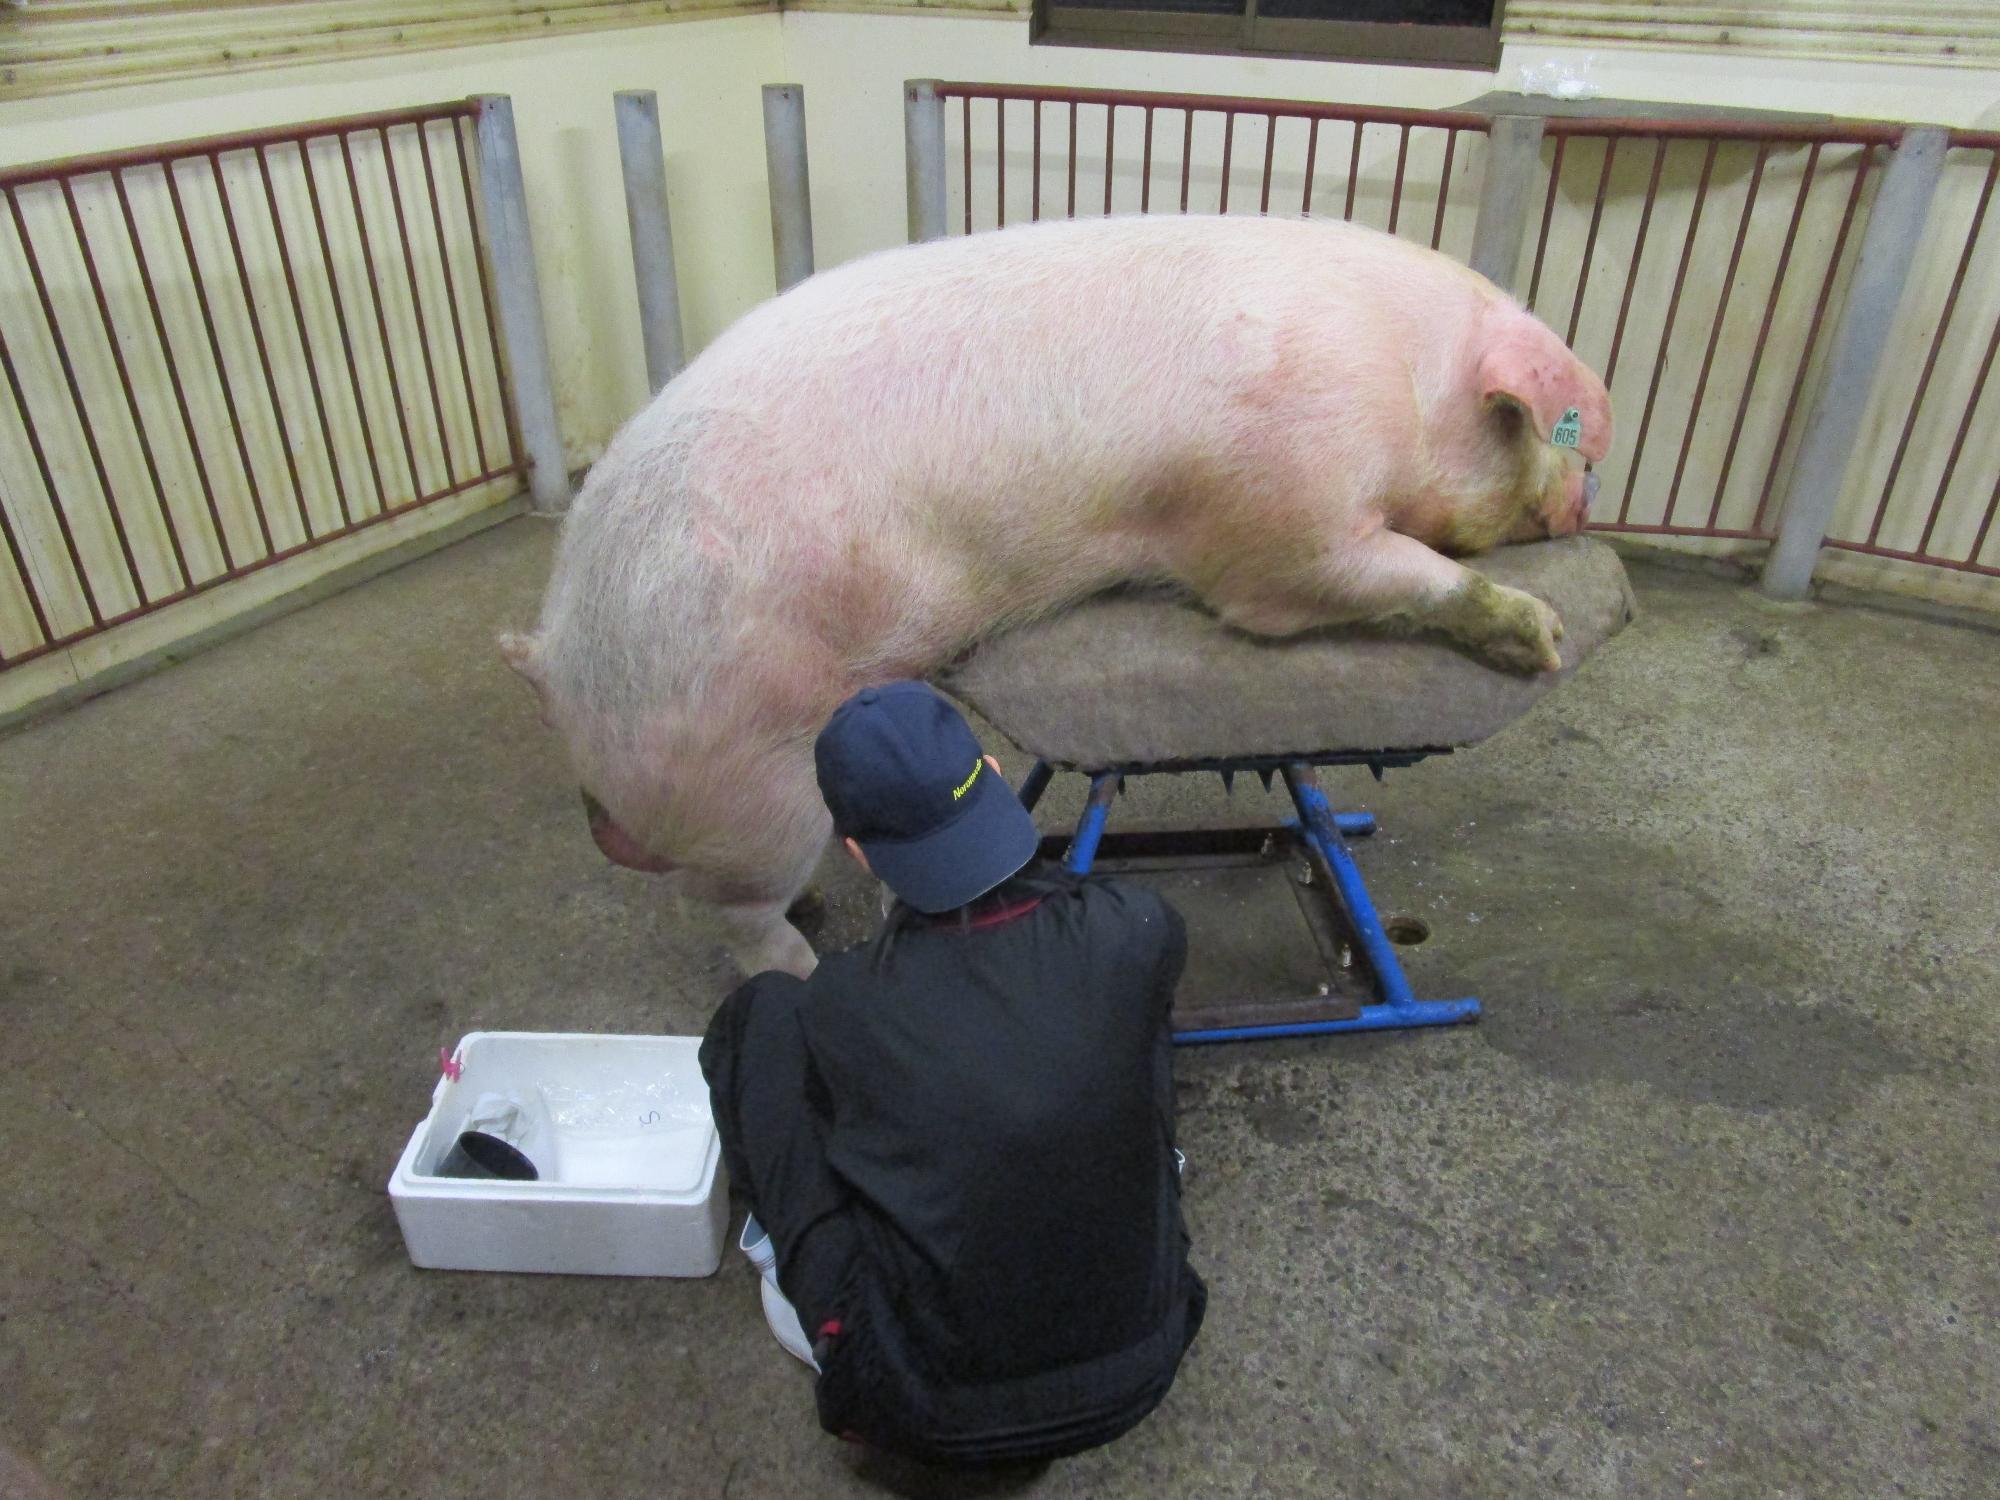 うつ伏せで寝ている1匹の大きな豚と1人の作業者が写った写真